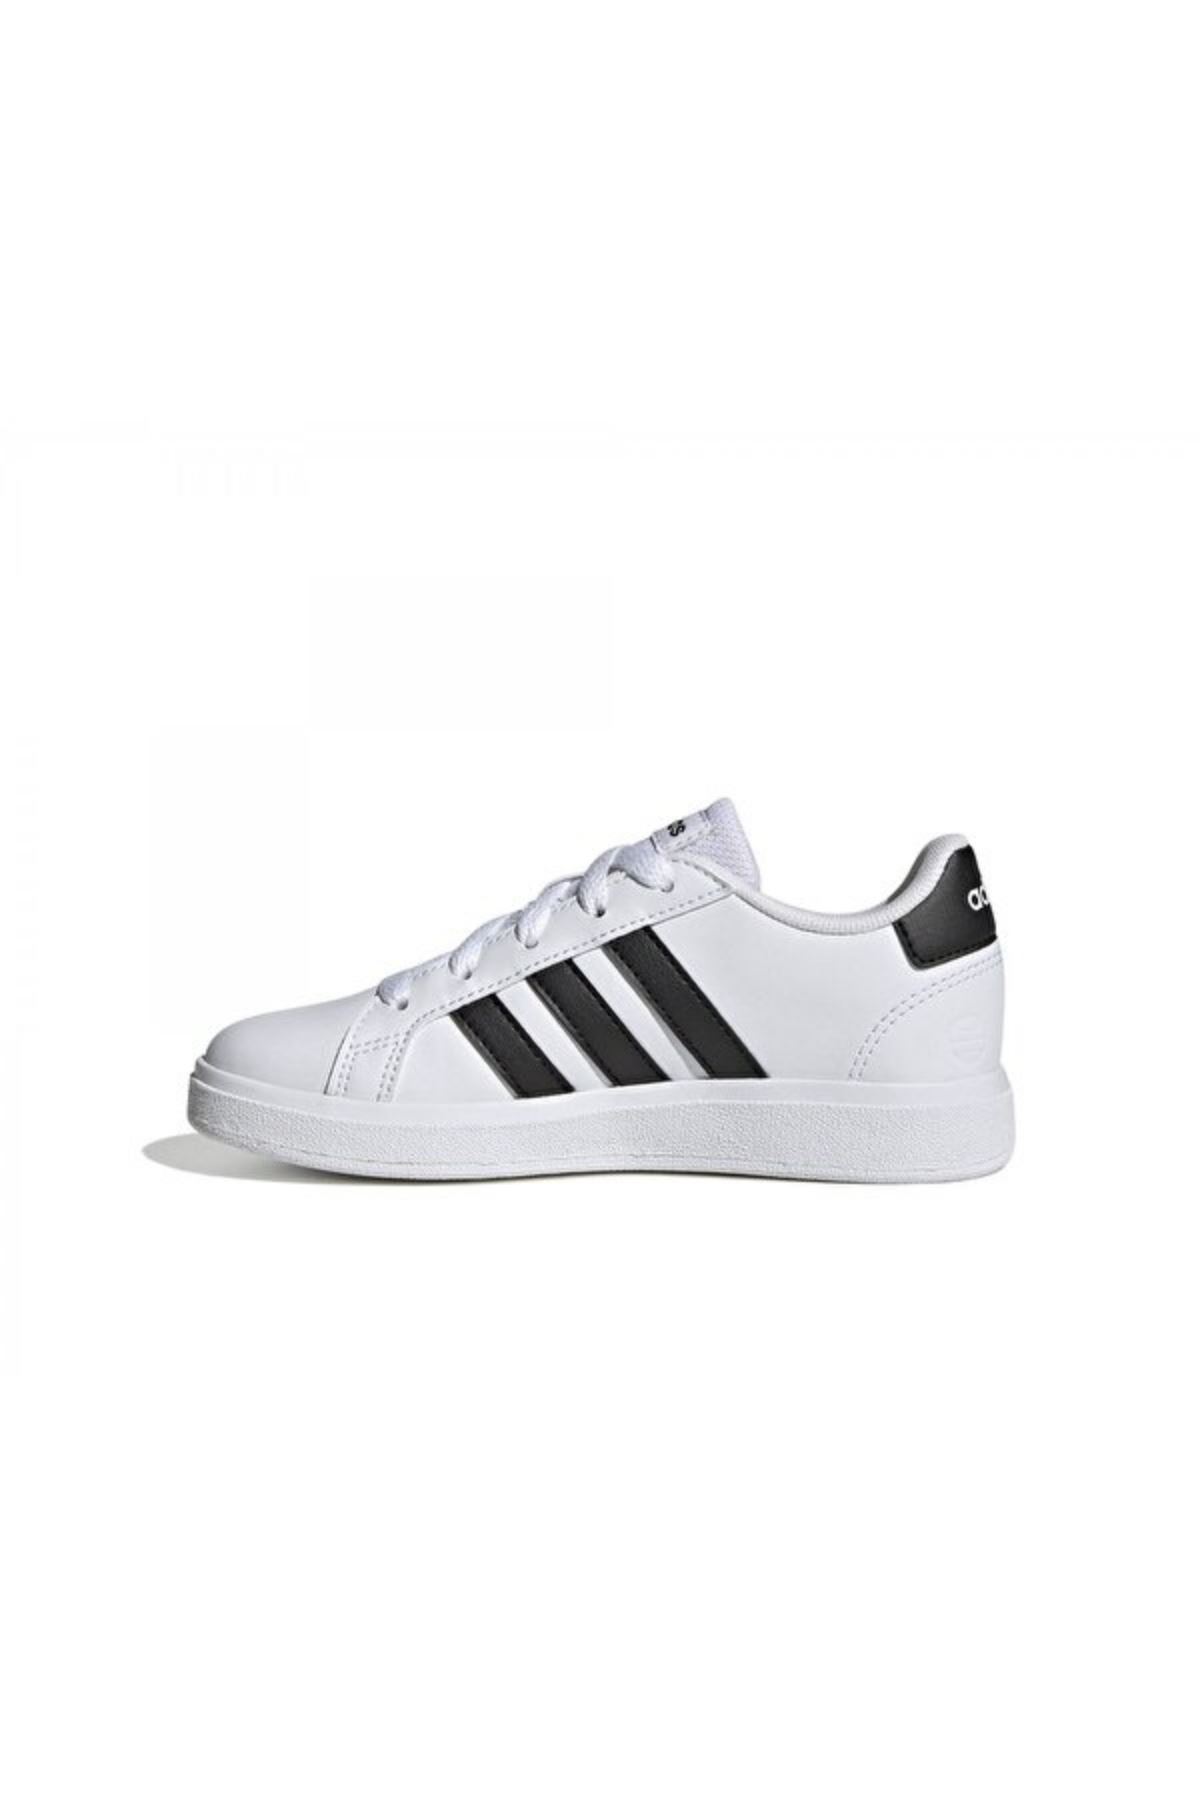 Adidas Grand Court 2.0 Erkek Çocuk Beyaz Spor Ayakkabı - GW6511